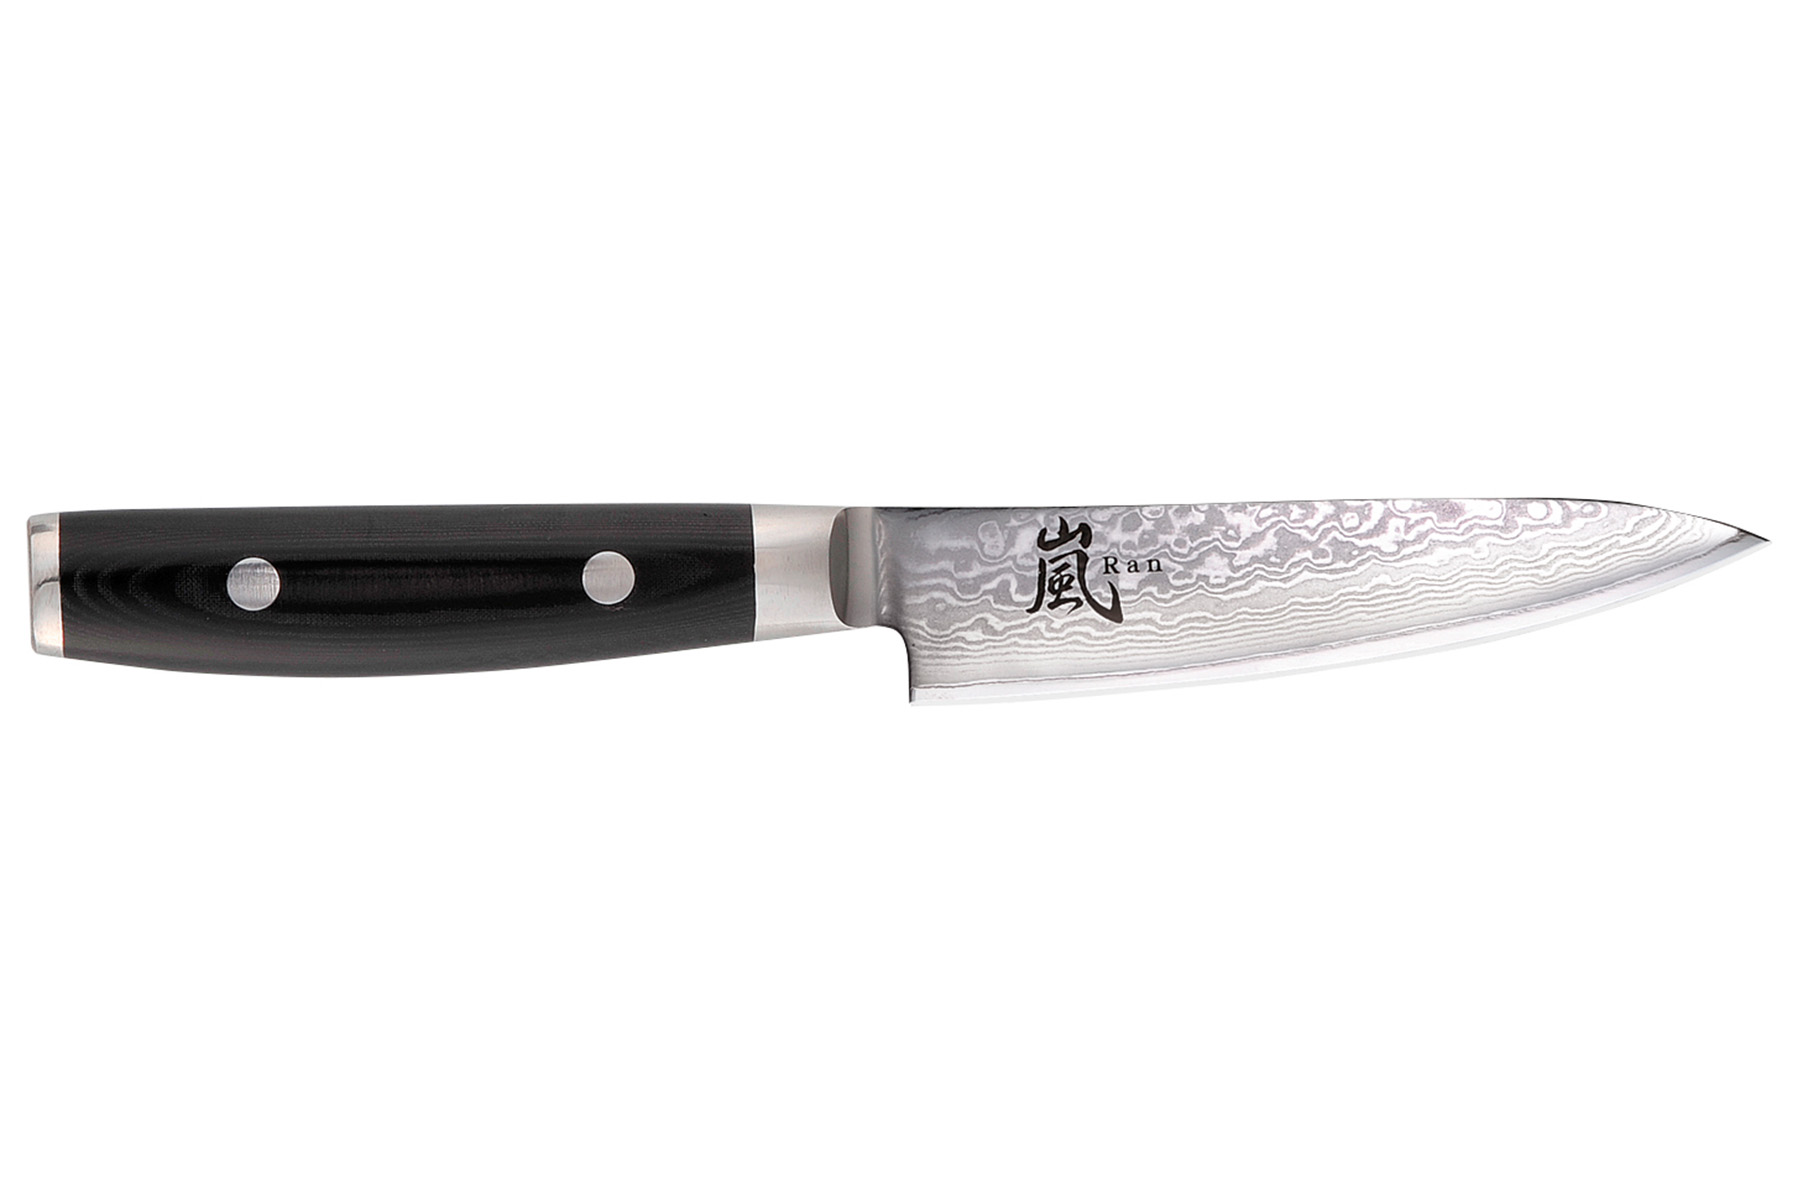 Couteau japonais Yaxell "Ran" - Couteau d'office 12 cm